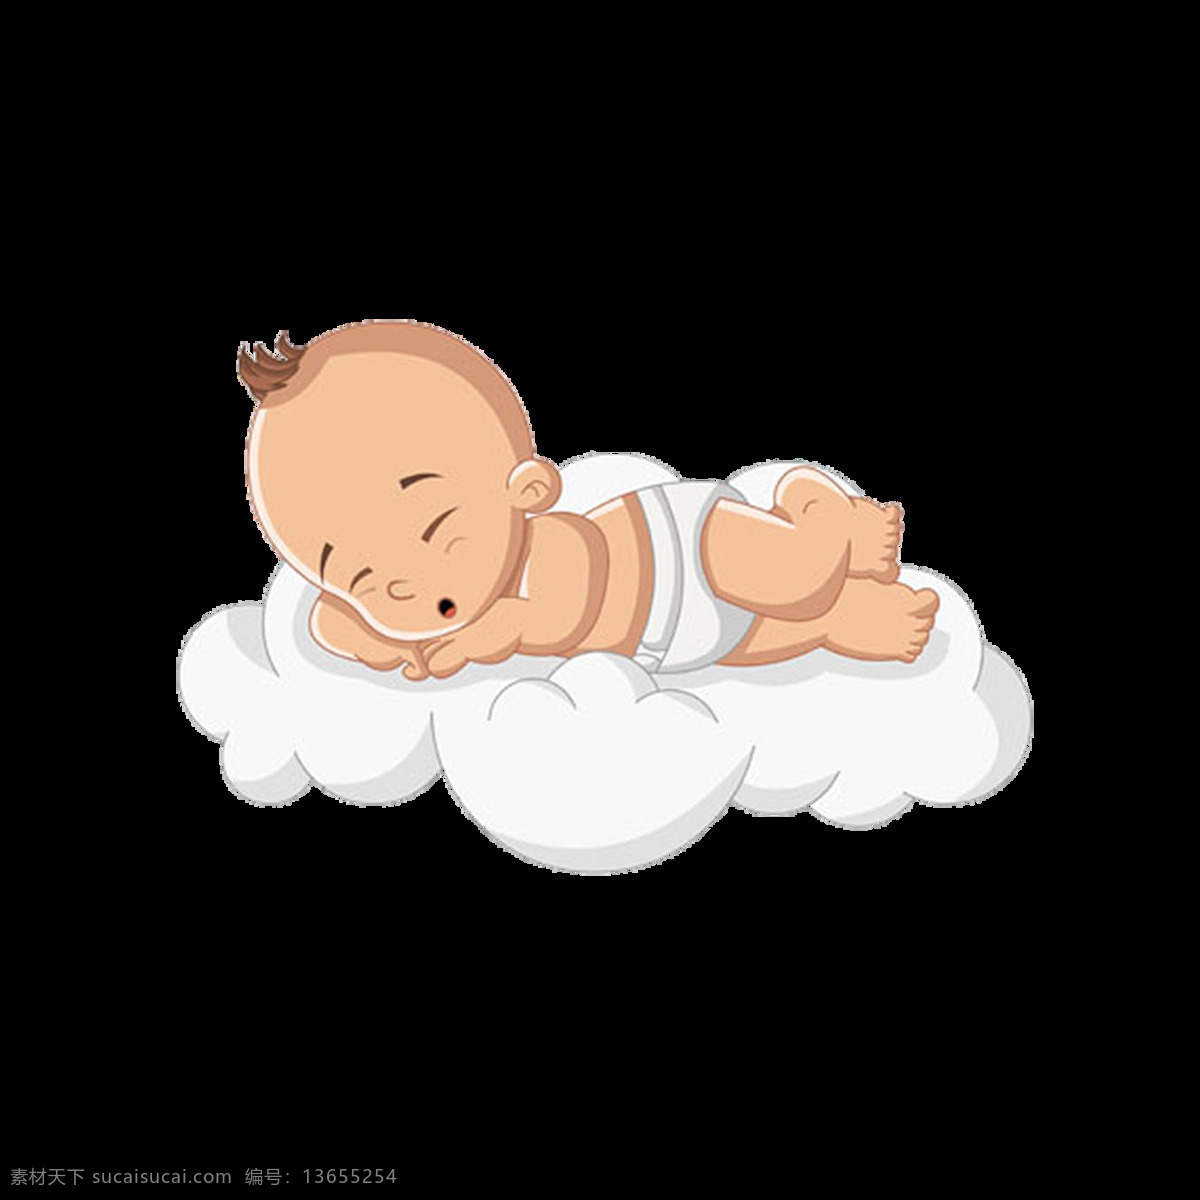 卡通 云端 婴儿 元素 手绘 可爱 熟睡 免抠